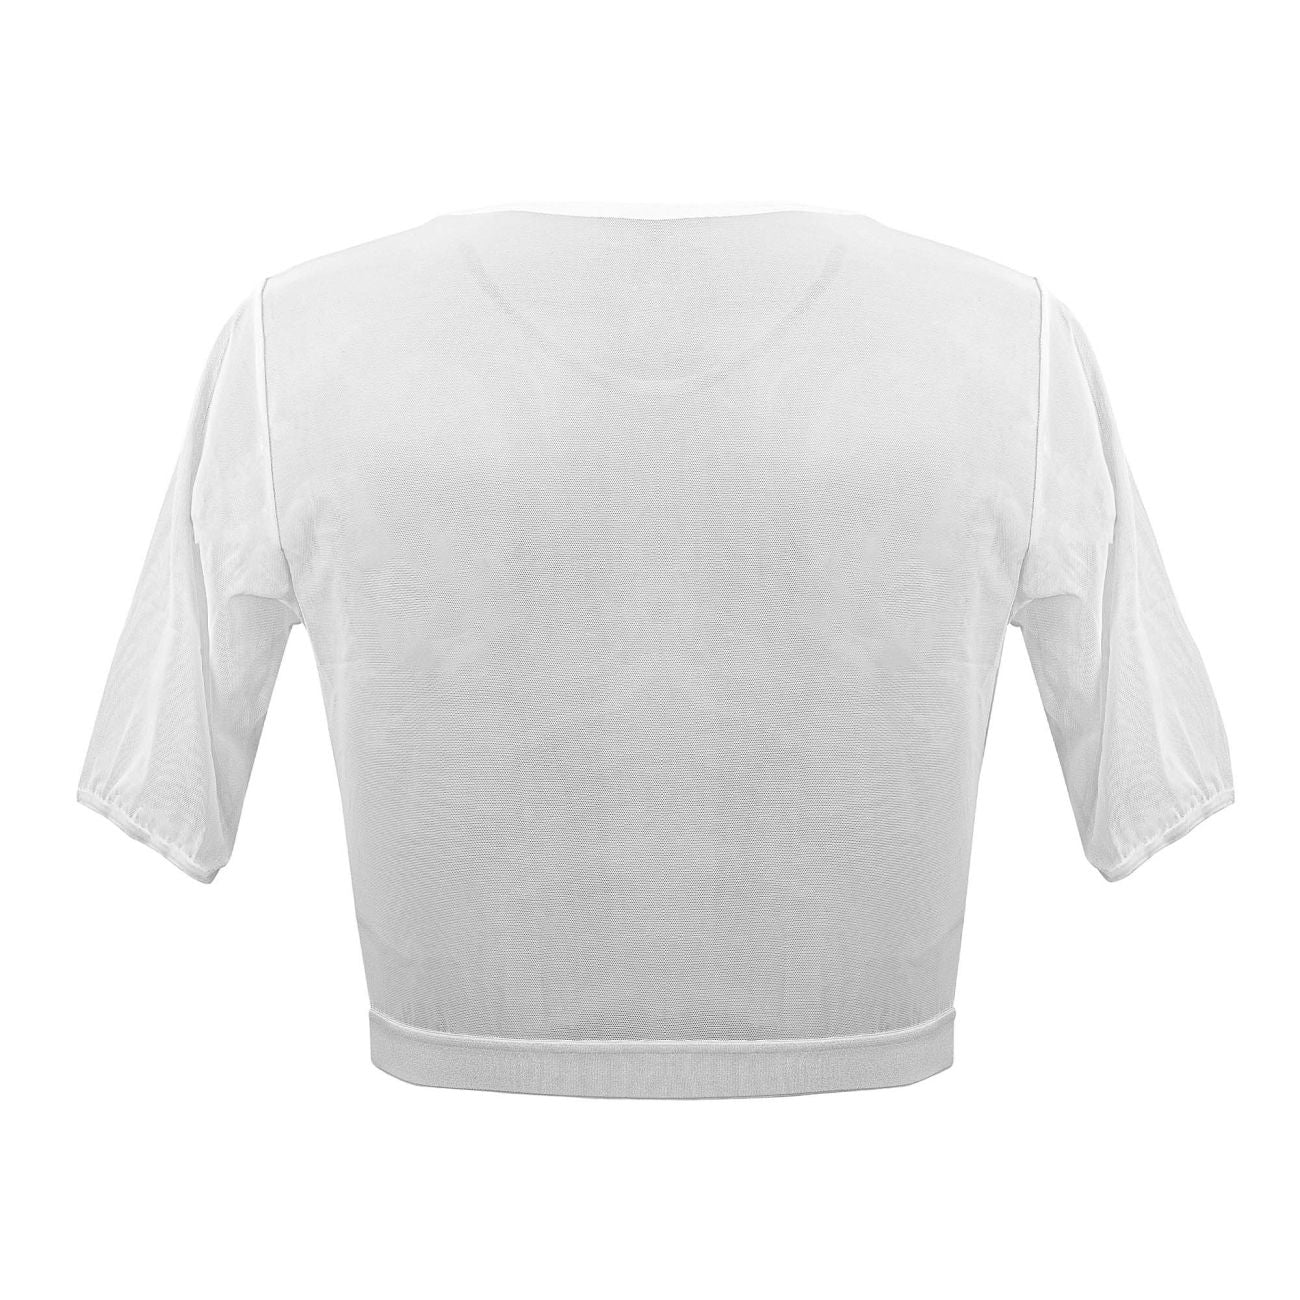 PLURAL PL009 Non-binary Underwear Crop Top White